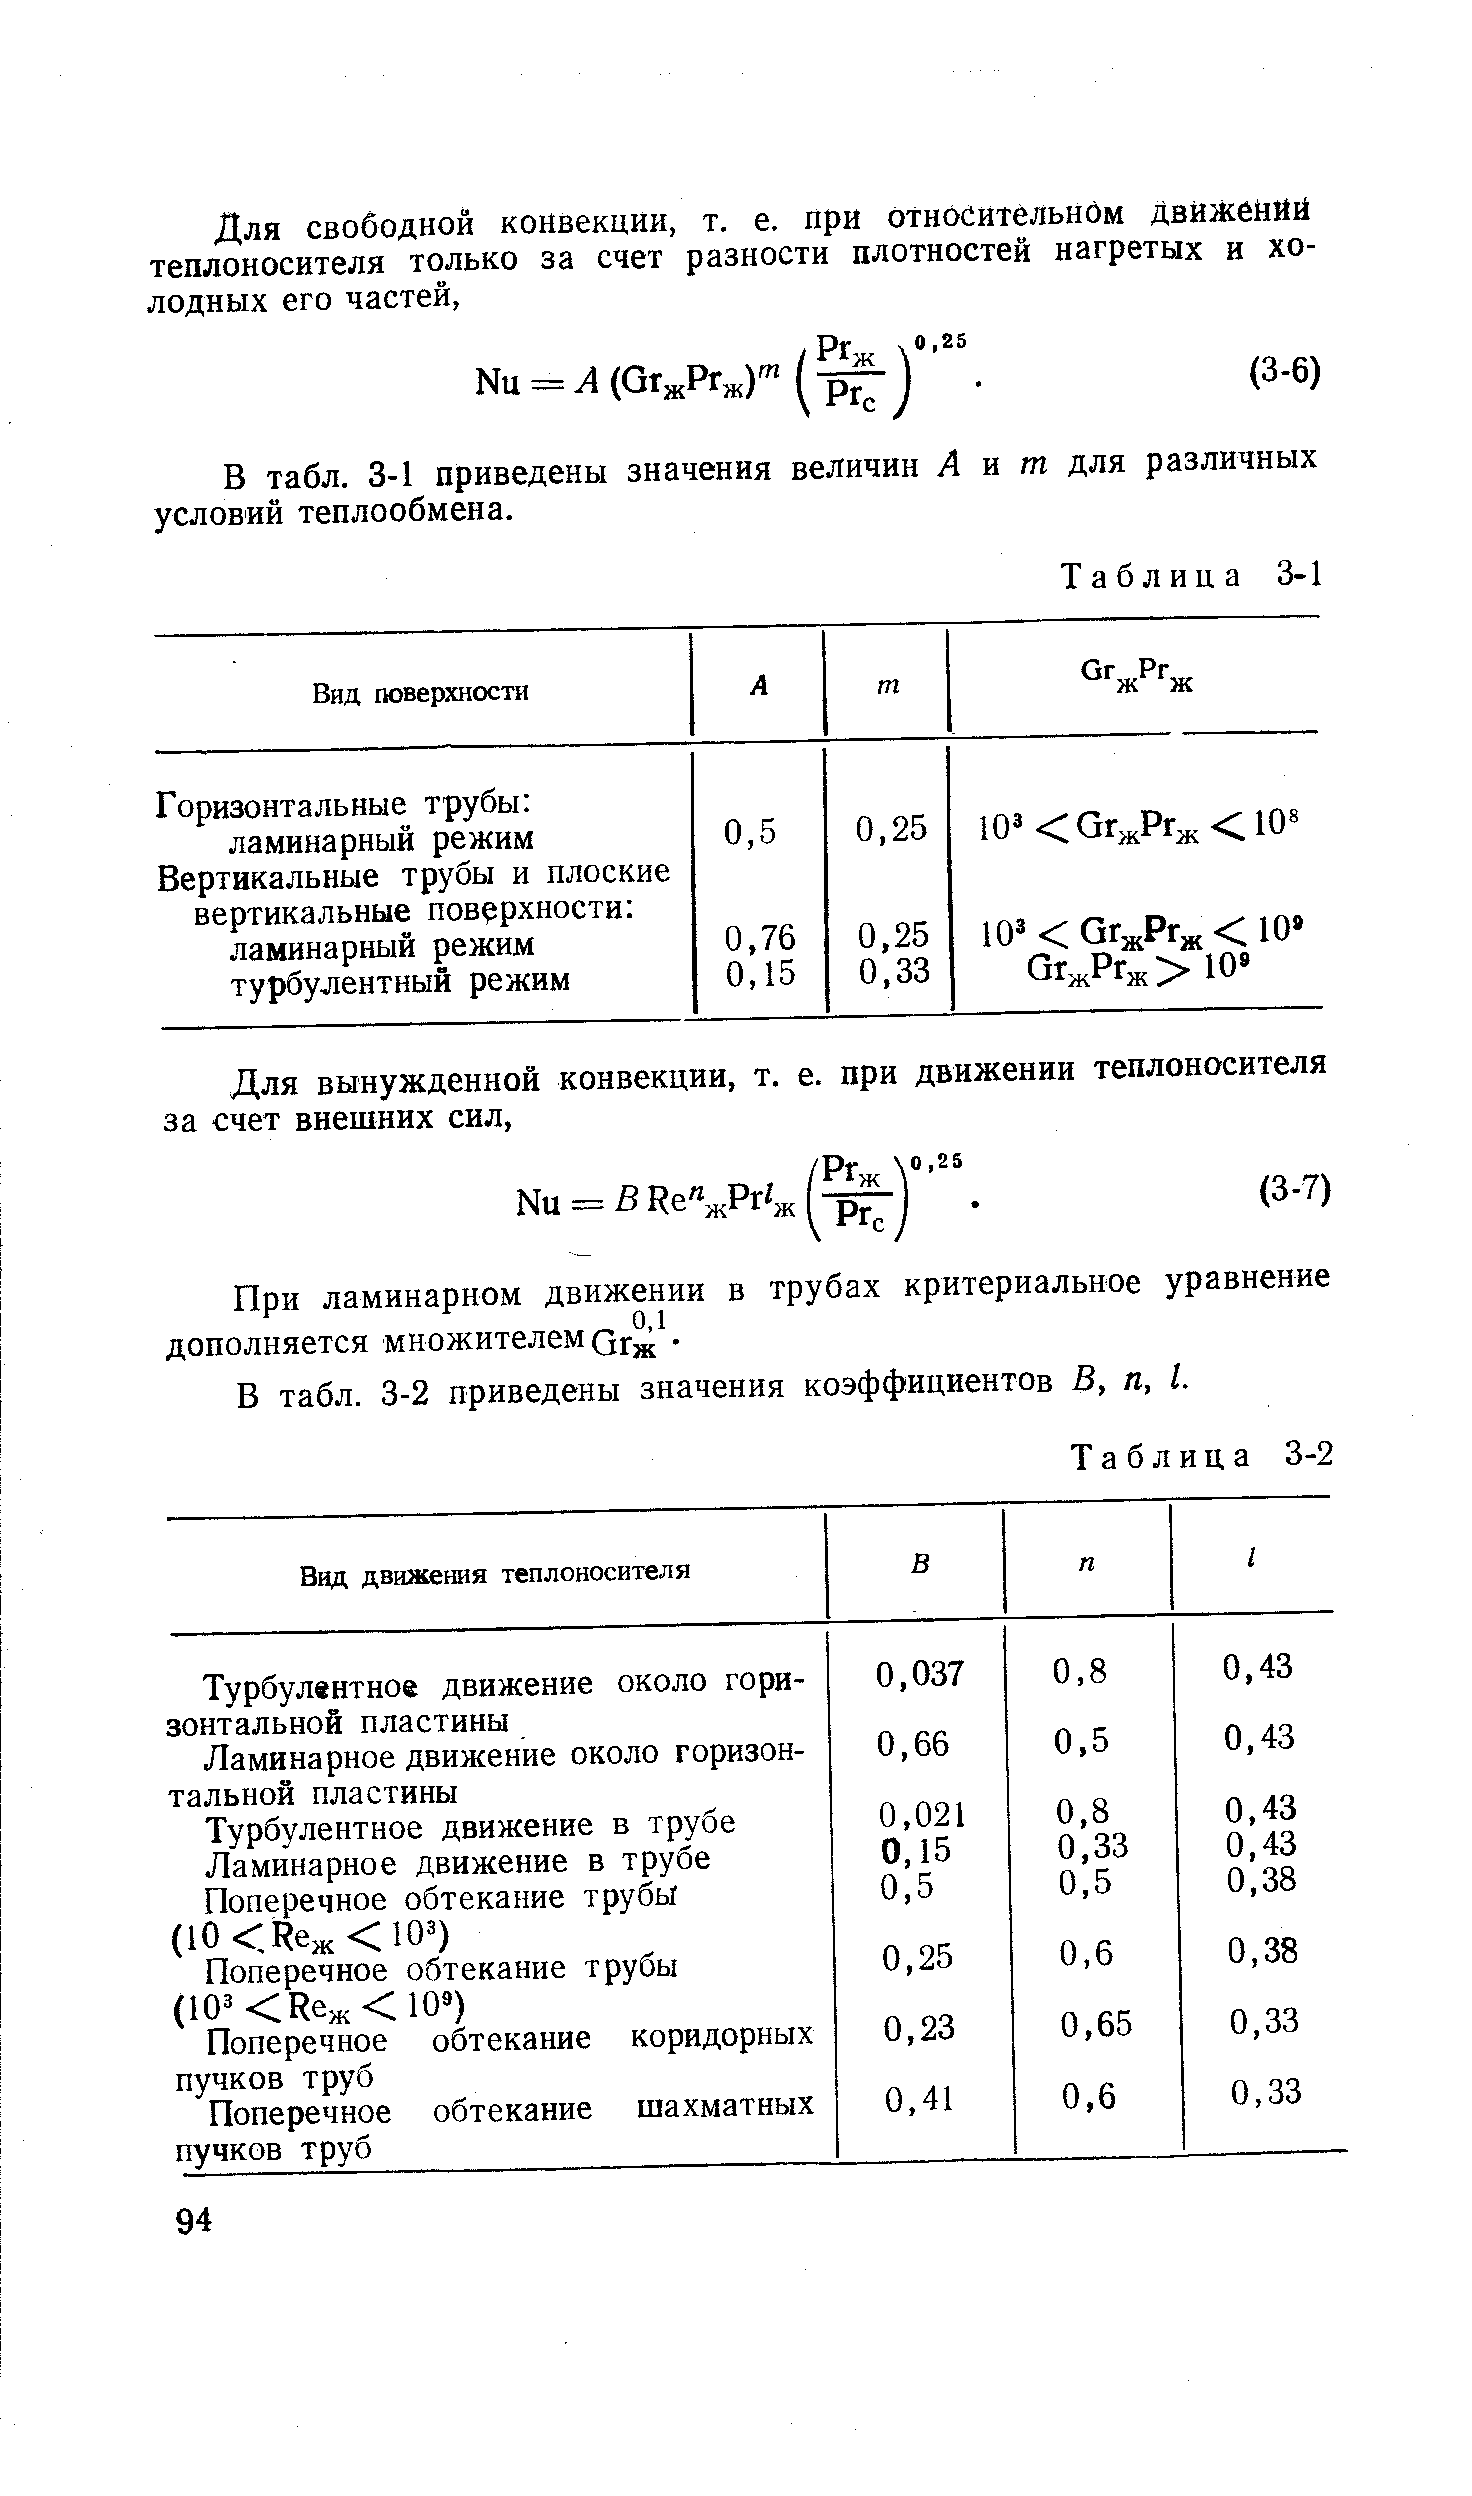 В табл. 3-1 приведены значения величин Л и яг для различных условий теплообмена.
